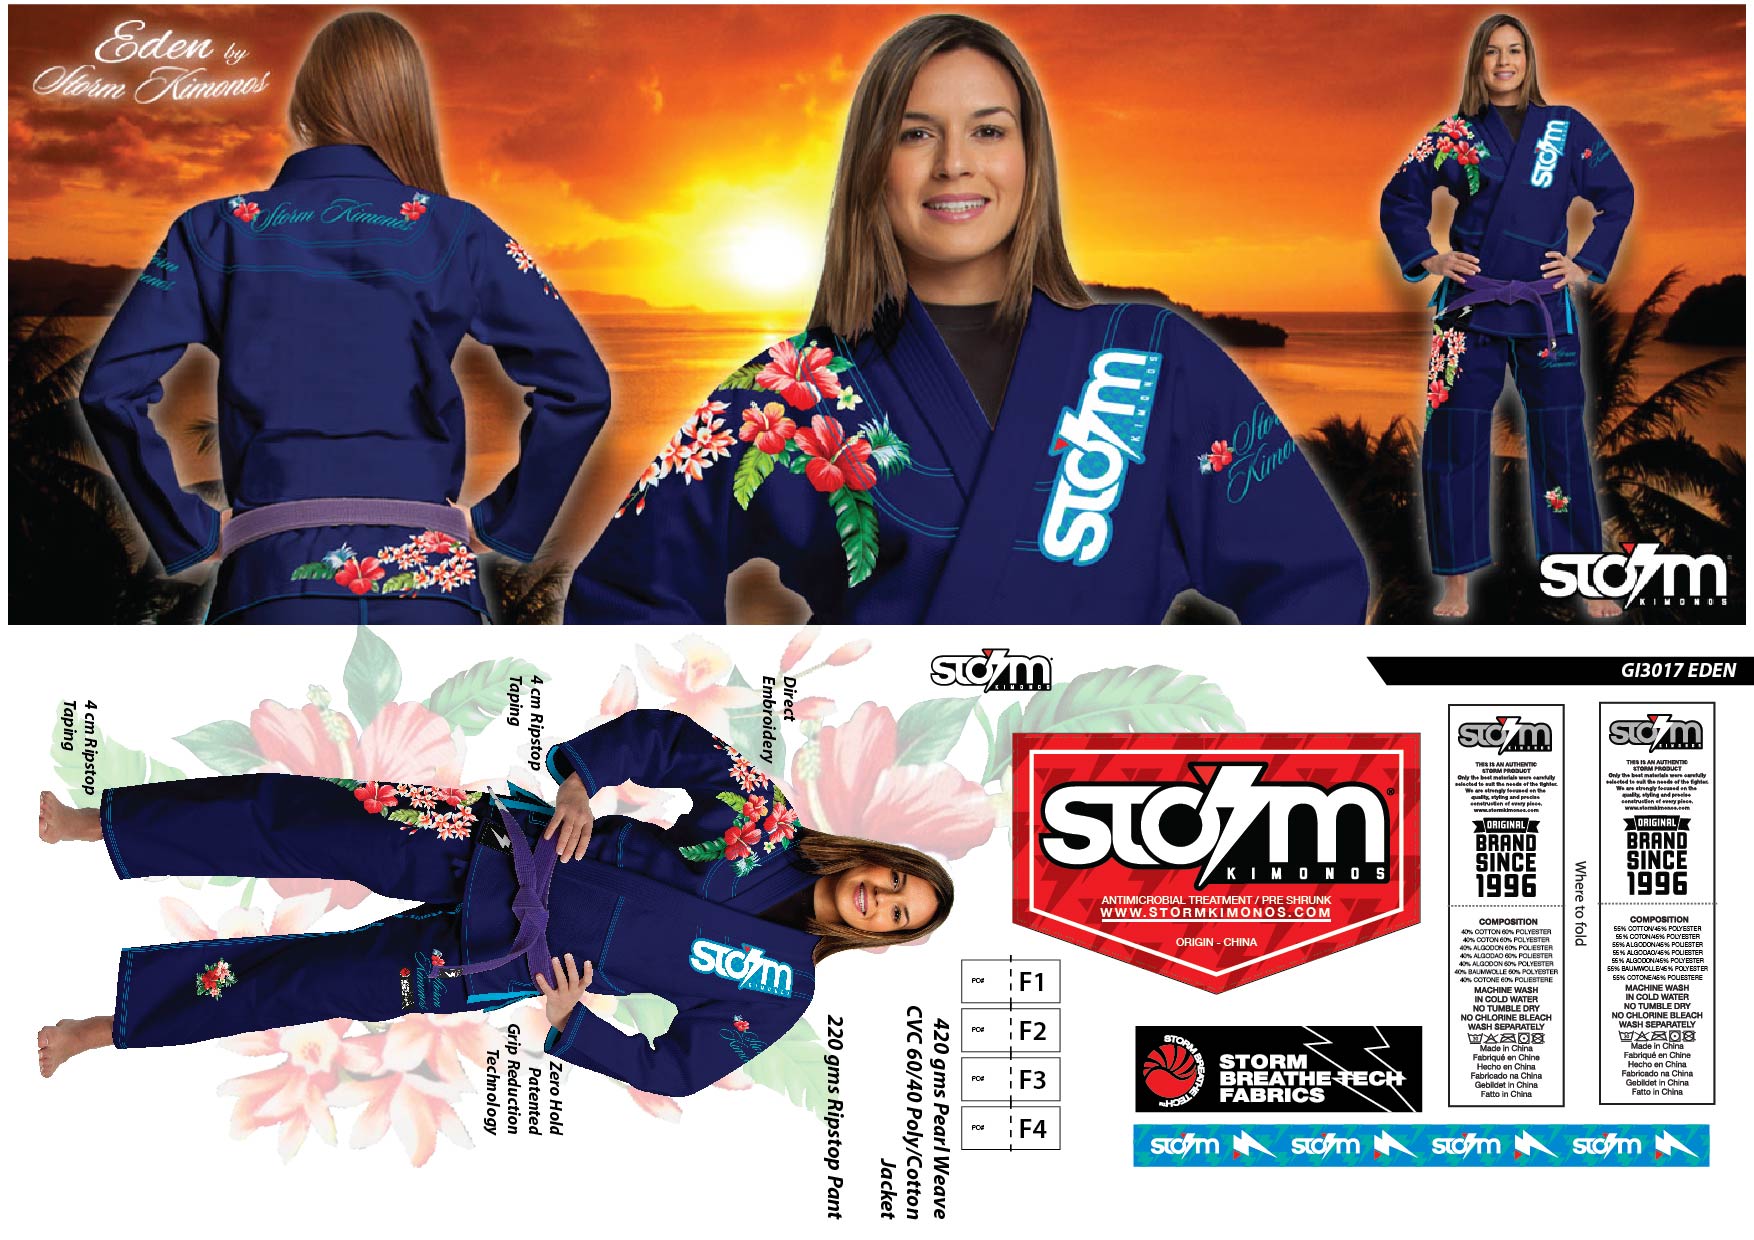 5 GI3017 STORM Kimonos® Eden - B